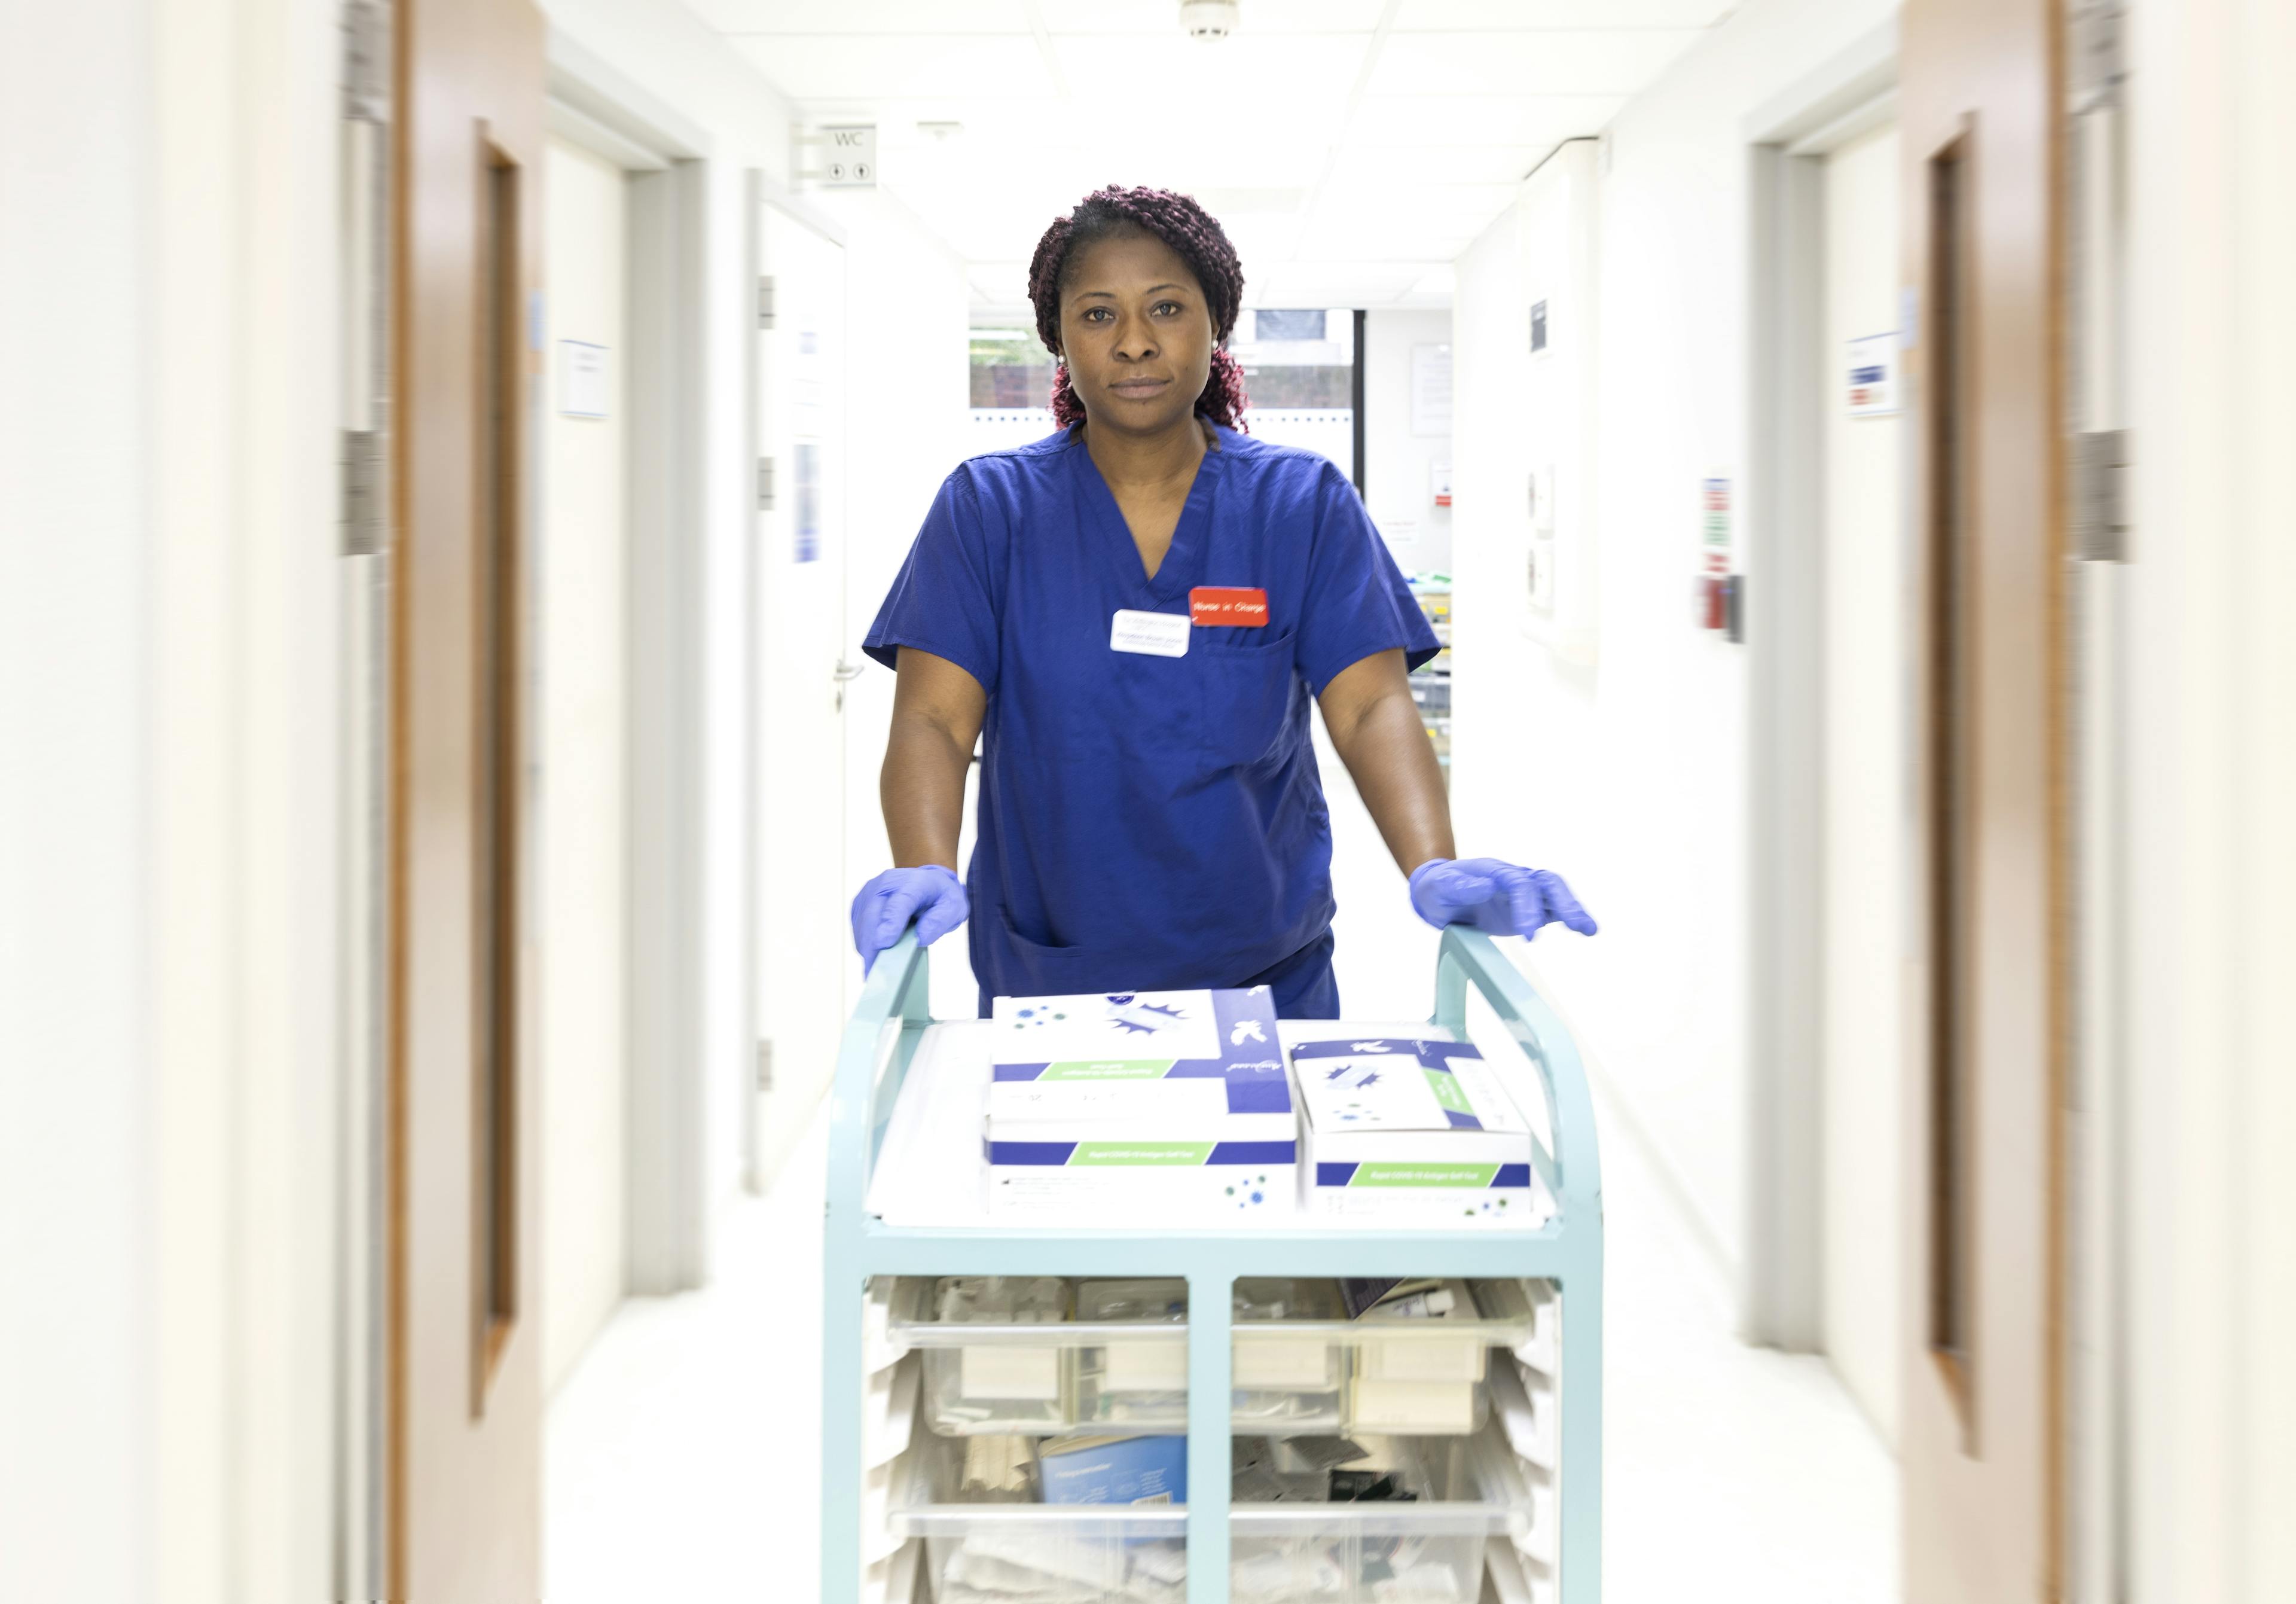 Endoscopy Senior Nurse, Novadeen Brown-Jones with trolley